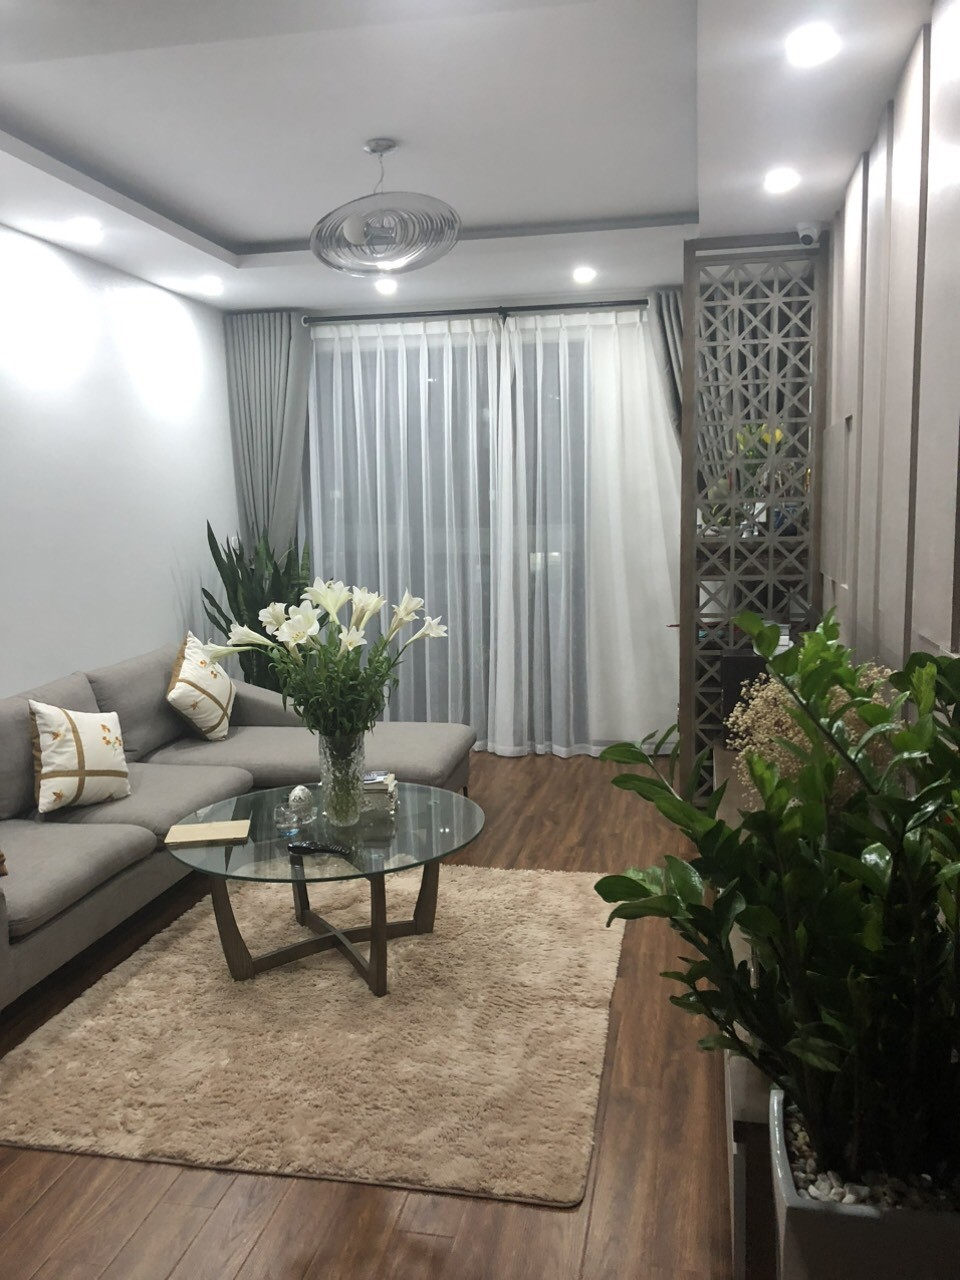 Chính chủ gửi bán 2 căn hộ đẹp mới ra GIÁ MỀM tại Chung cư An Bình City 4